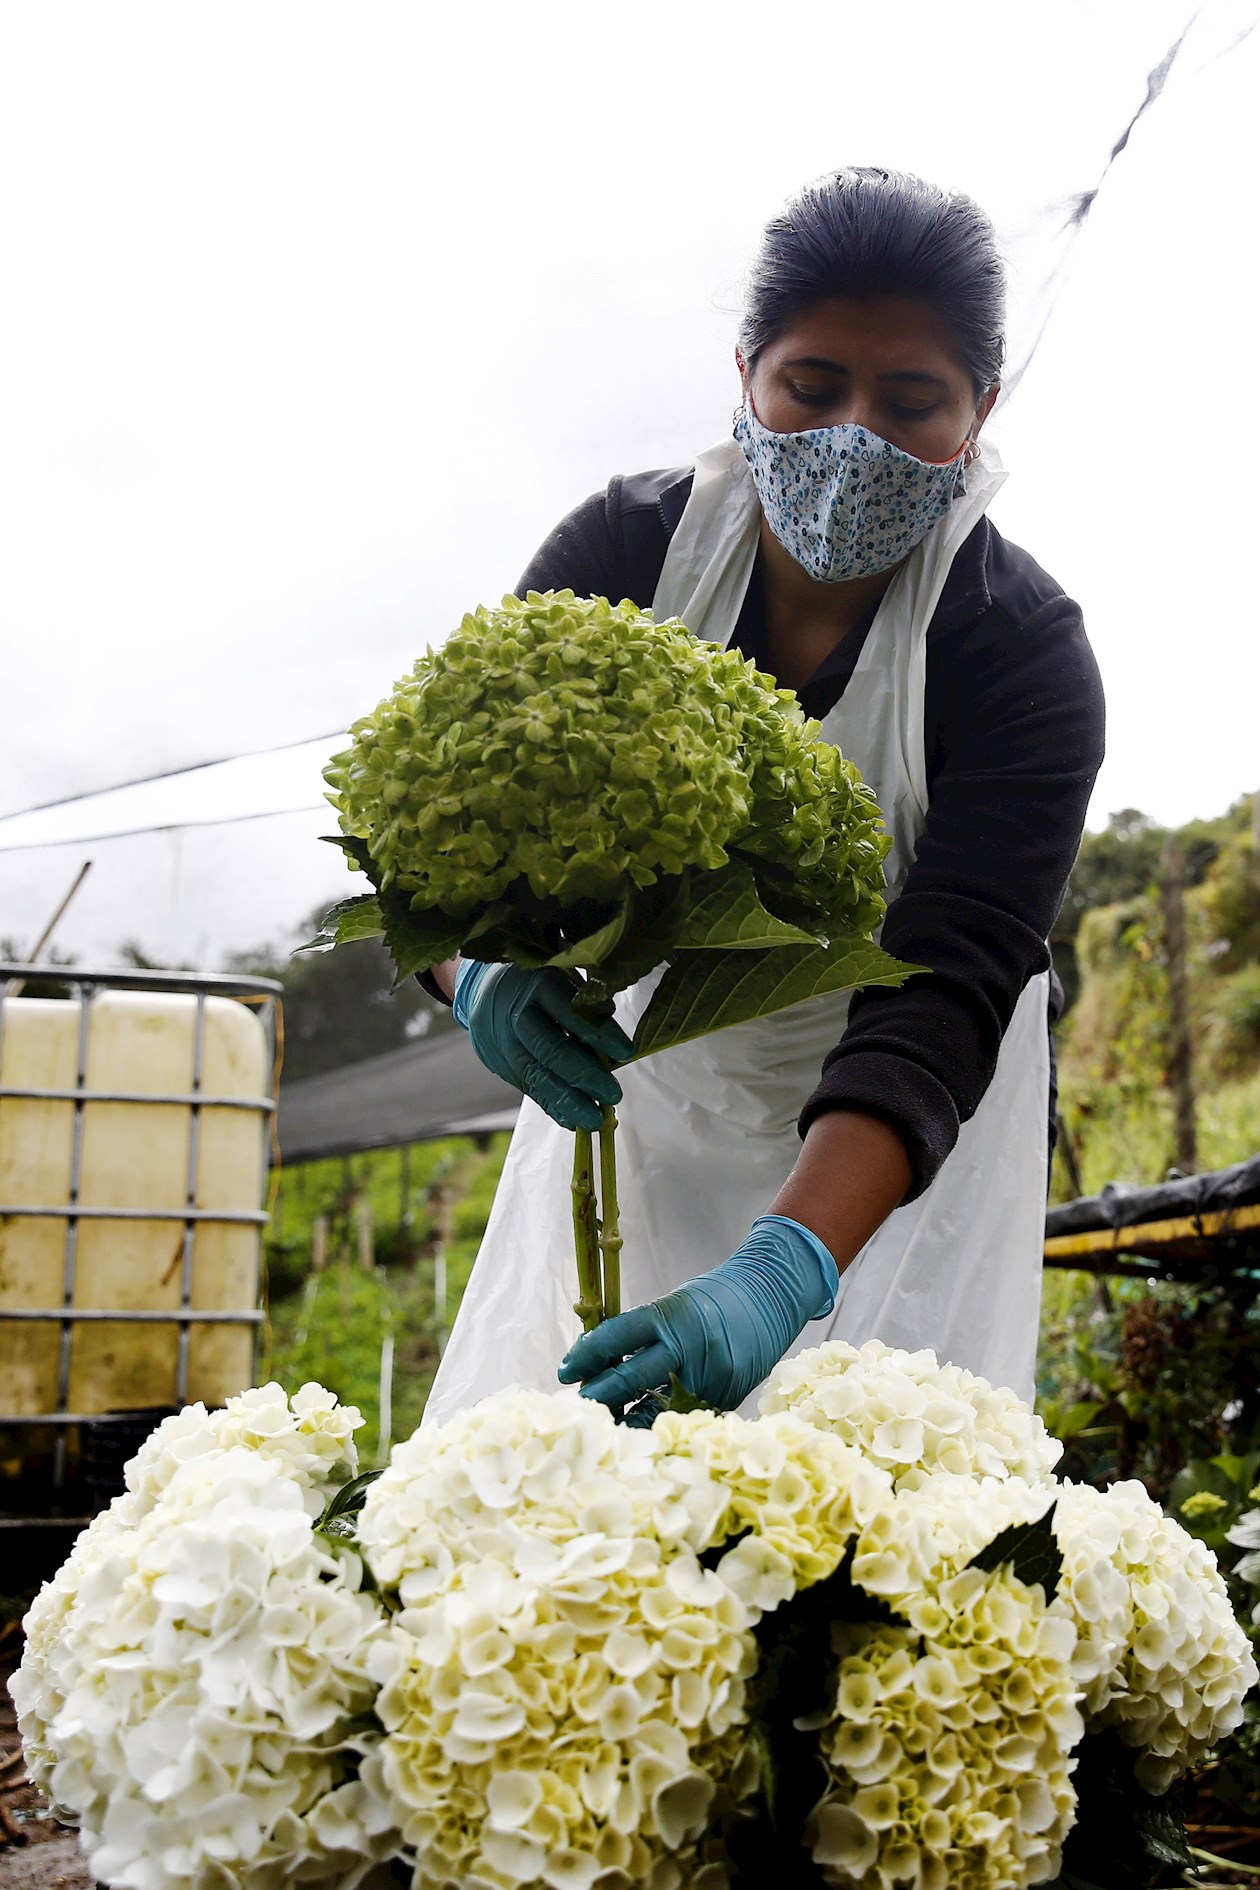 Campesinos colombianos coquetean con sus hortensias en mercado  internacional | ZONA CERO